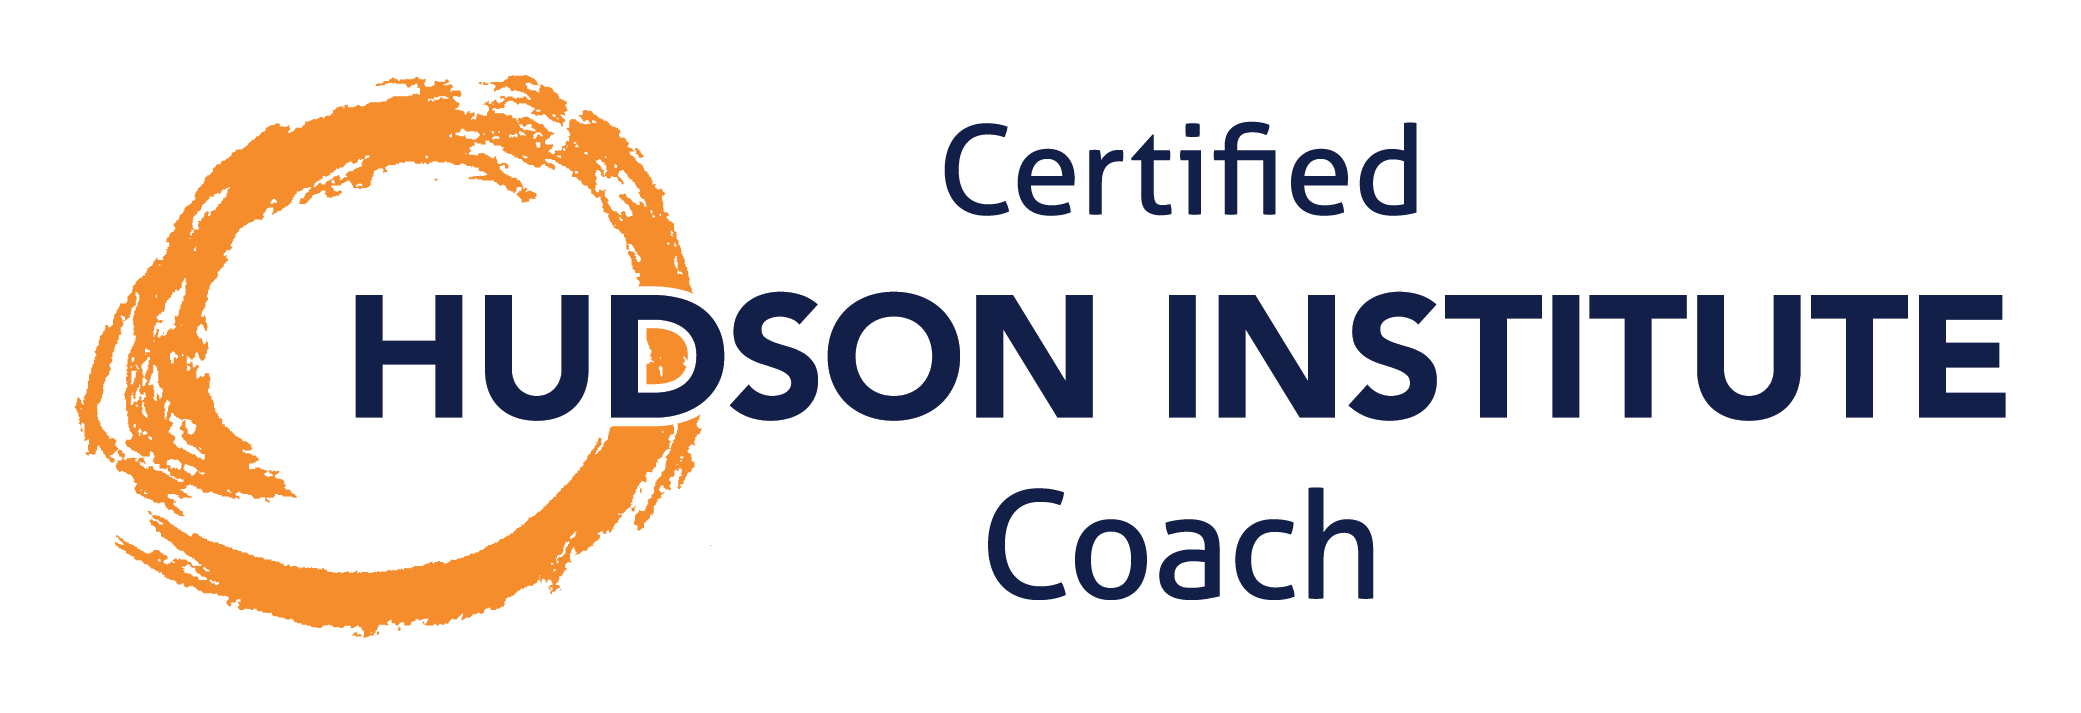 Certified Hudson Institute Coach